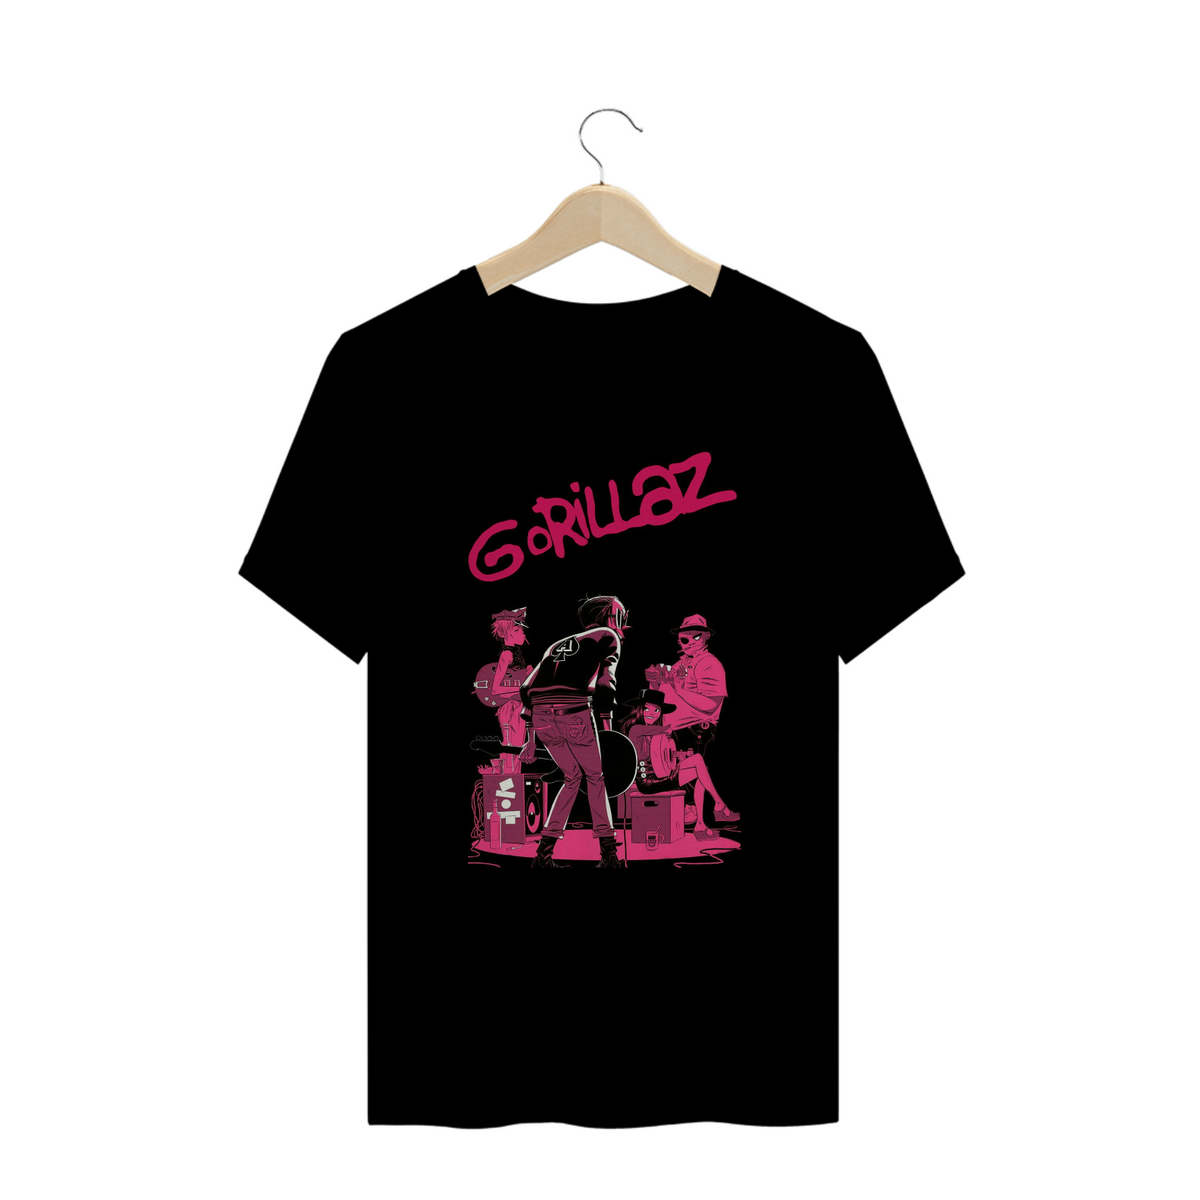 Nome do produto: Camisa - Gorillaz in Concert